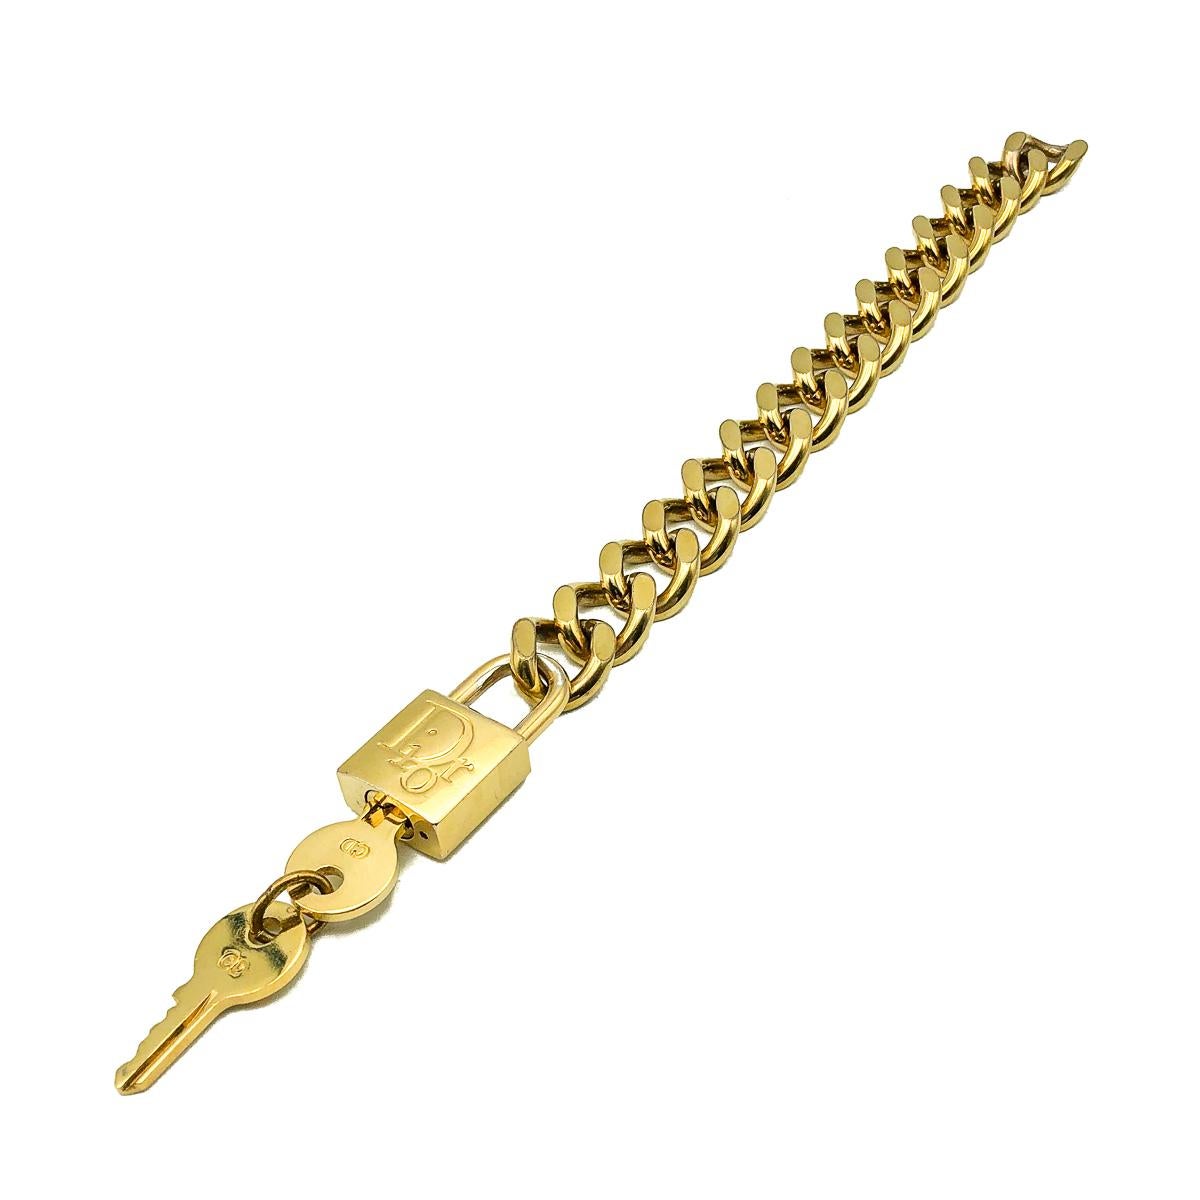 Un bracelet cadenas Dior vintage totalement iconique. Fabriqué en métal plaqué or et doté d'un mécanisme de cadenas qui permet d'attacher et de détacher la chaîne. Très bon état vintage. Chaîne d'environ 18,5 cm. Clés amovibles. Un bracelet vintage